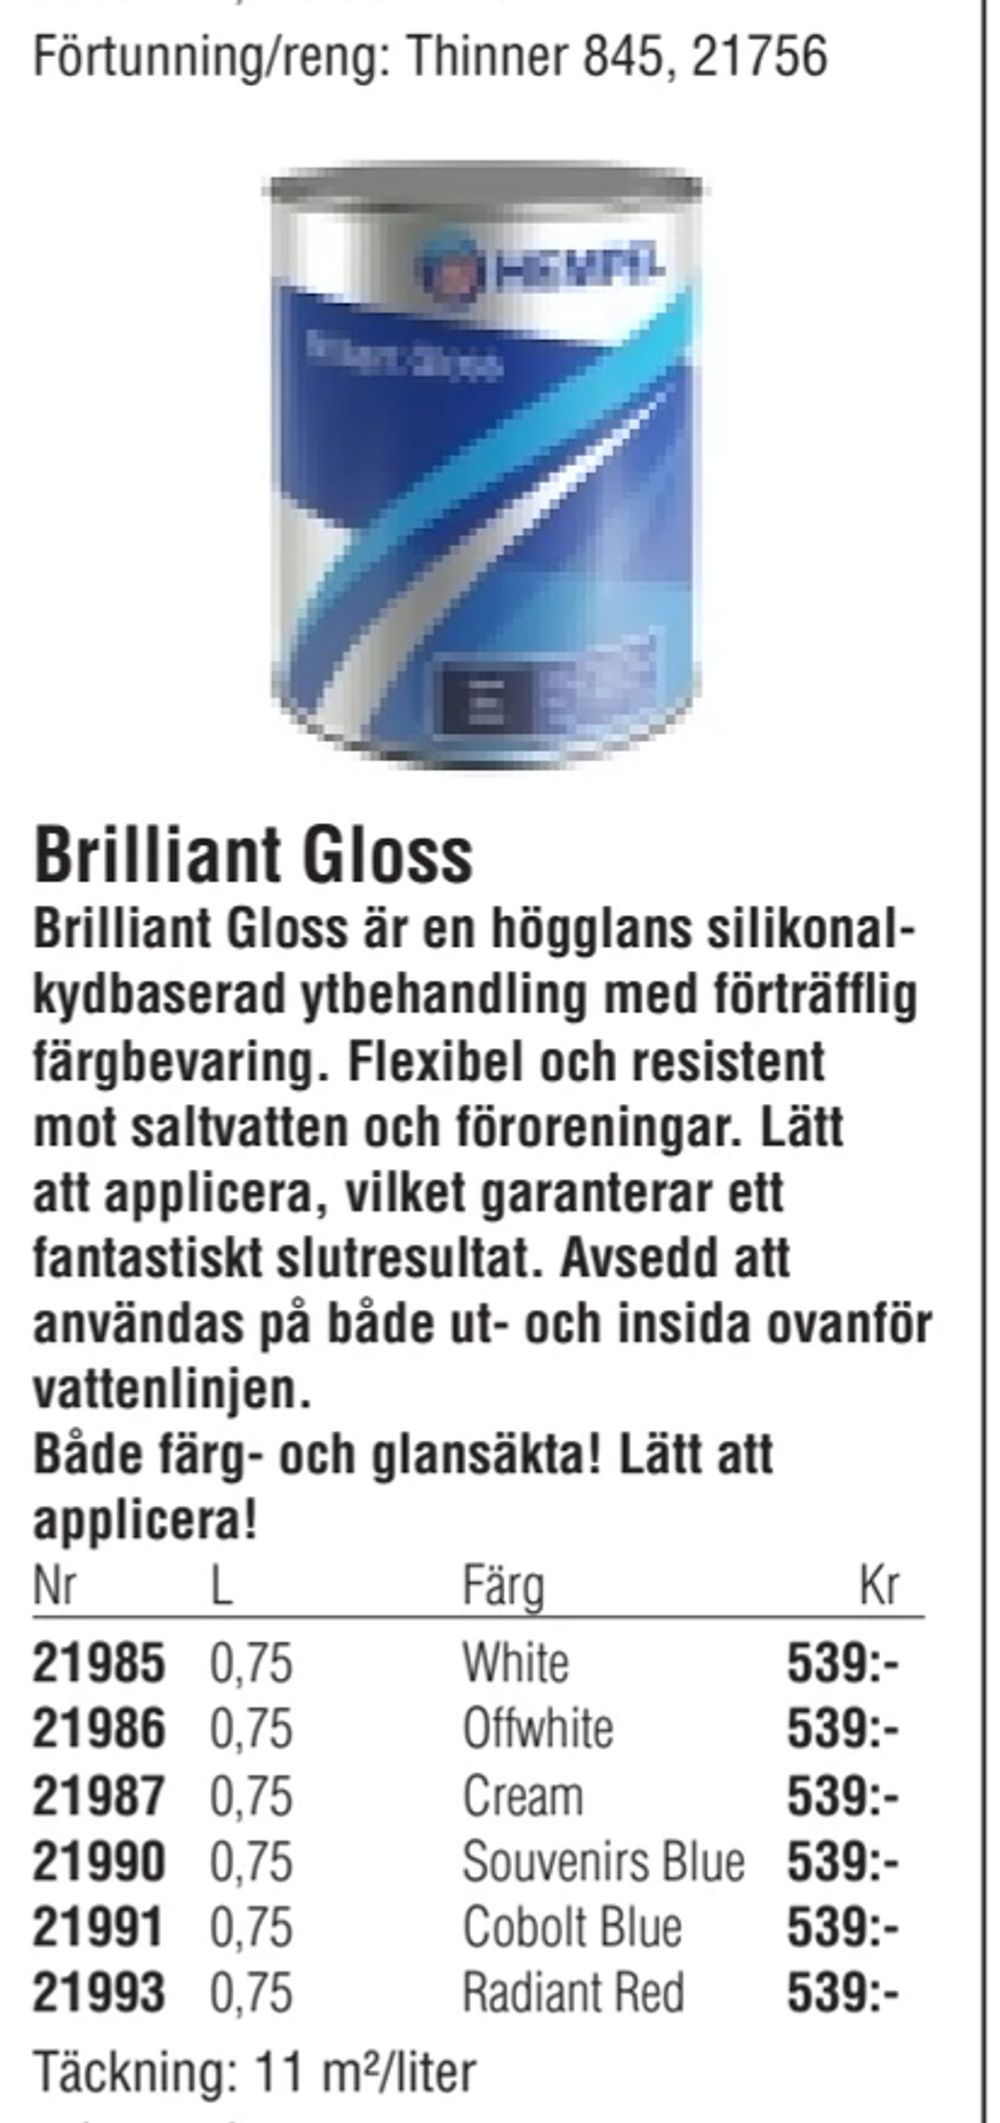 Erbjudanden på Brilliant Gloss från Erlandsons Brygga för 539 kr